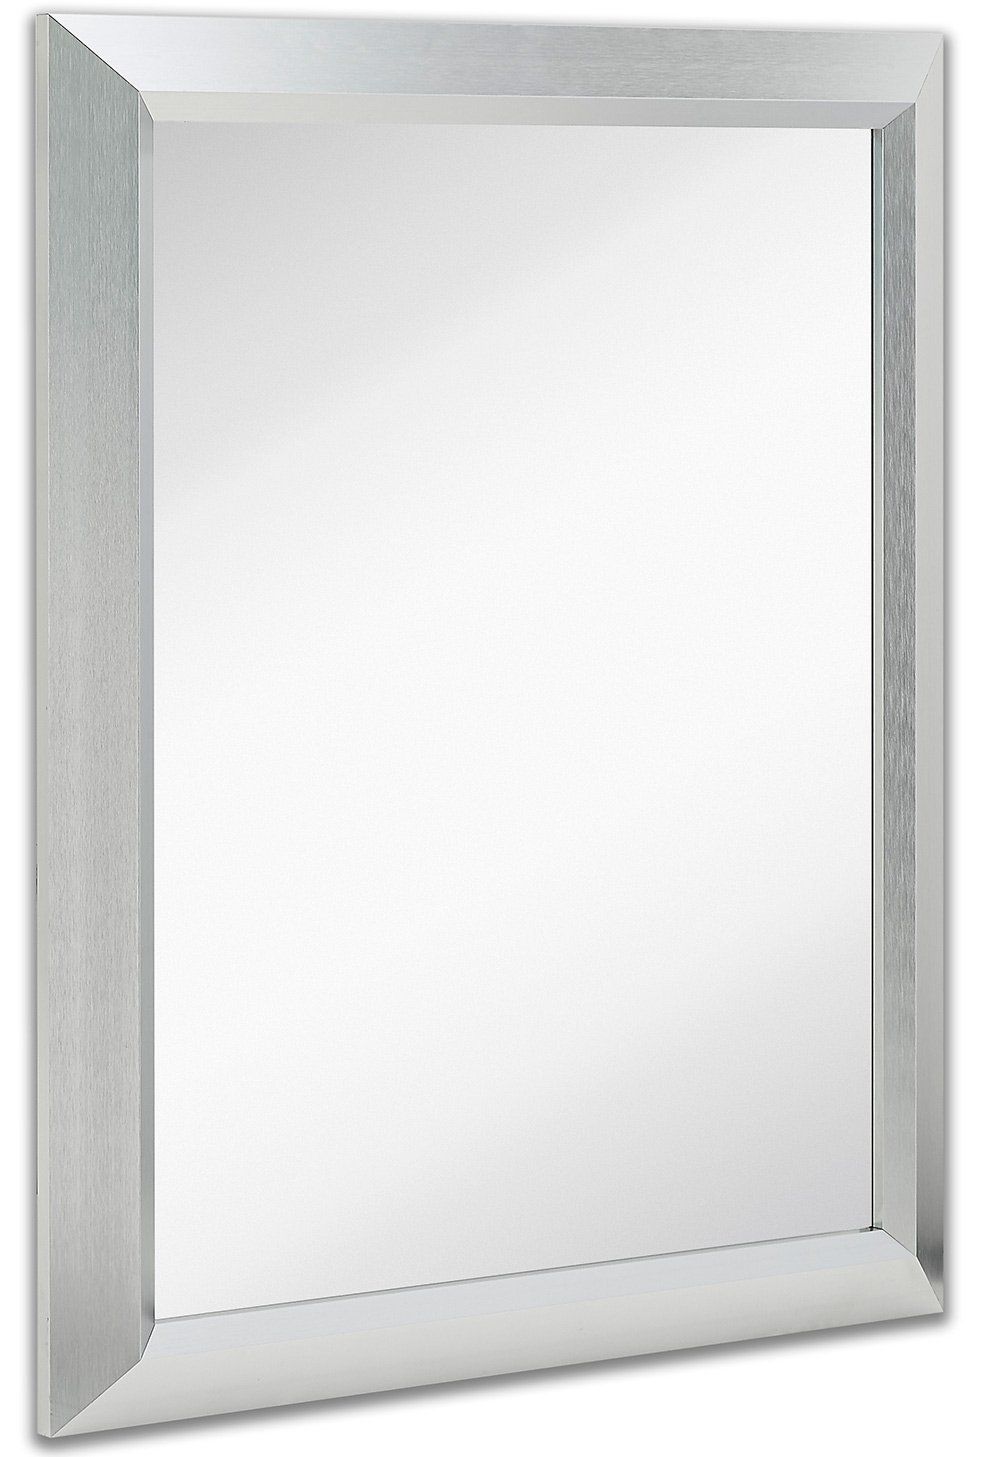 Premium Rectangular Brushed Nickel Wall Mirror | Contemporary Metal With Regard To Hogge Modern Brushed Nickel Large Frame Wall Mirrors (View 3 of 15)